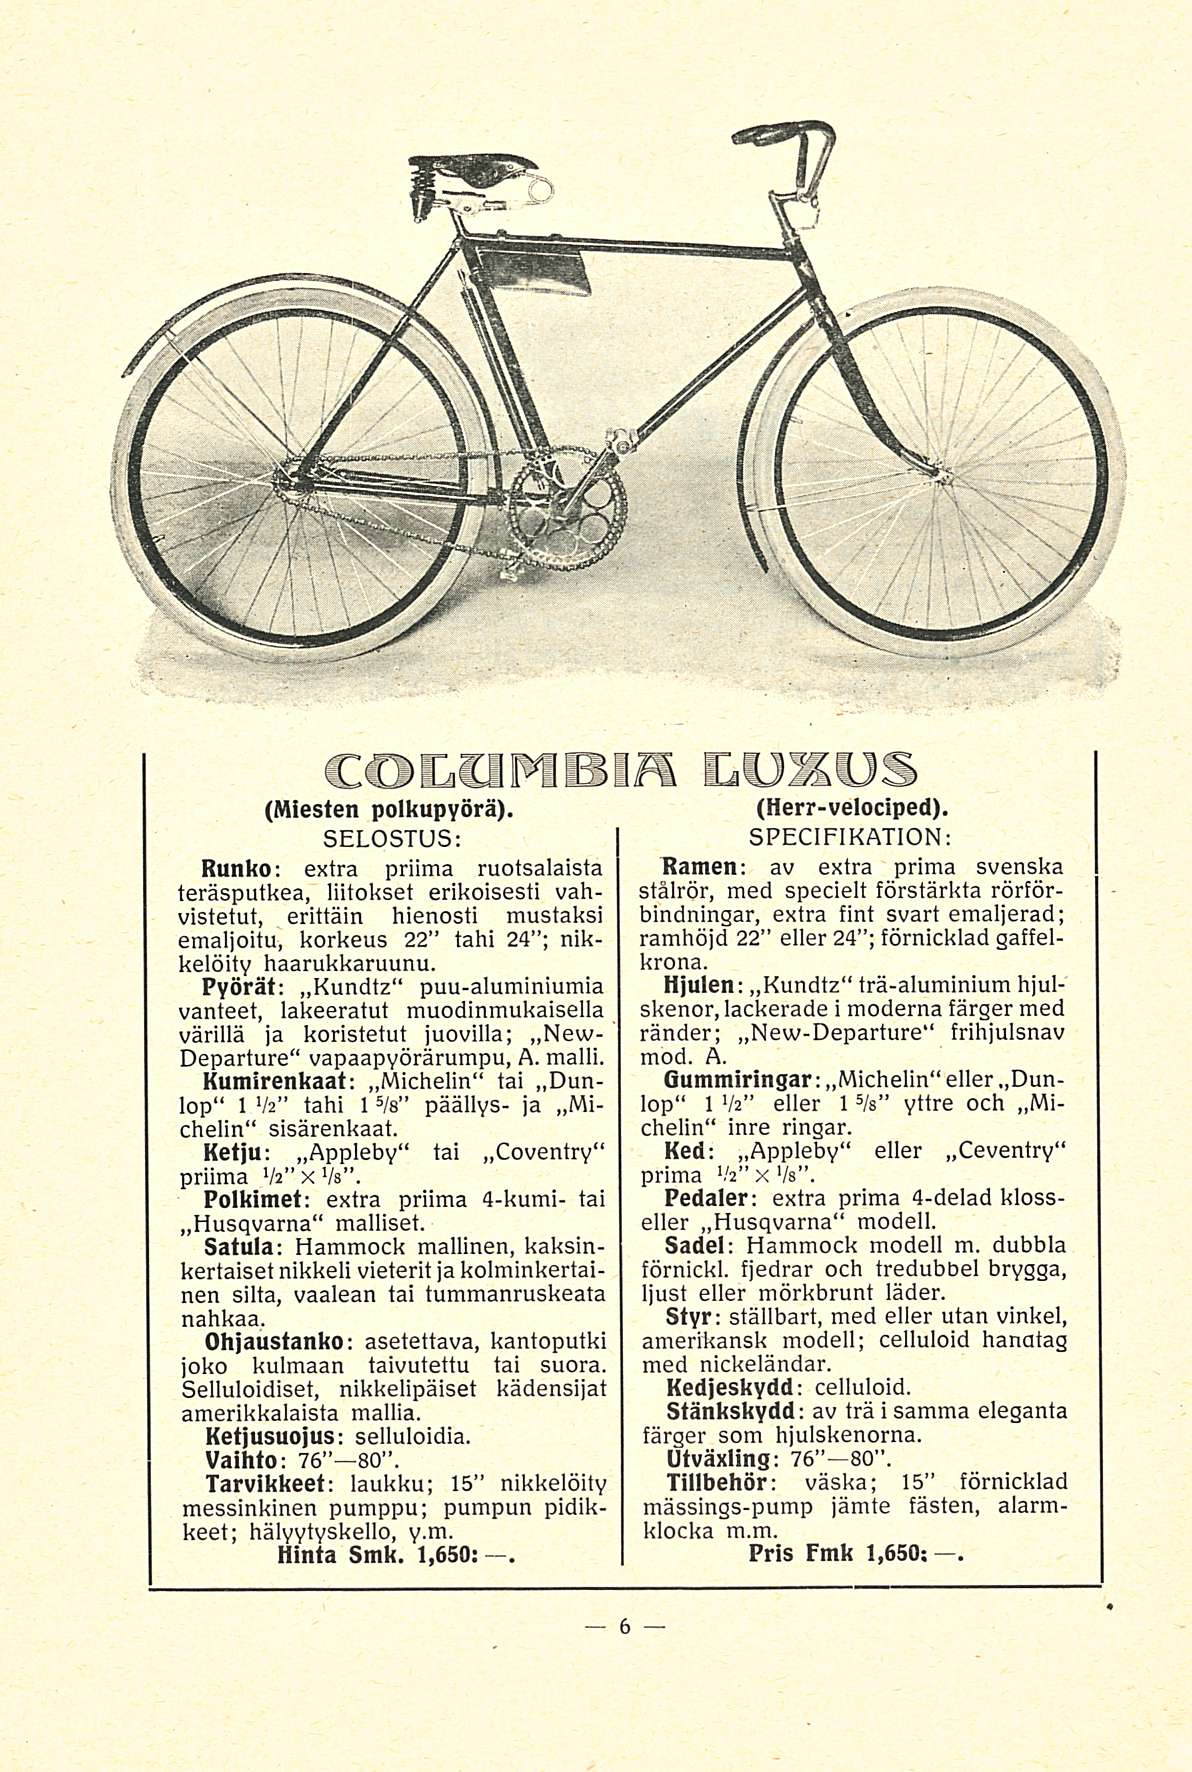 COLUMBIA LUXUS (Miesten polkupyörä).